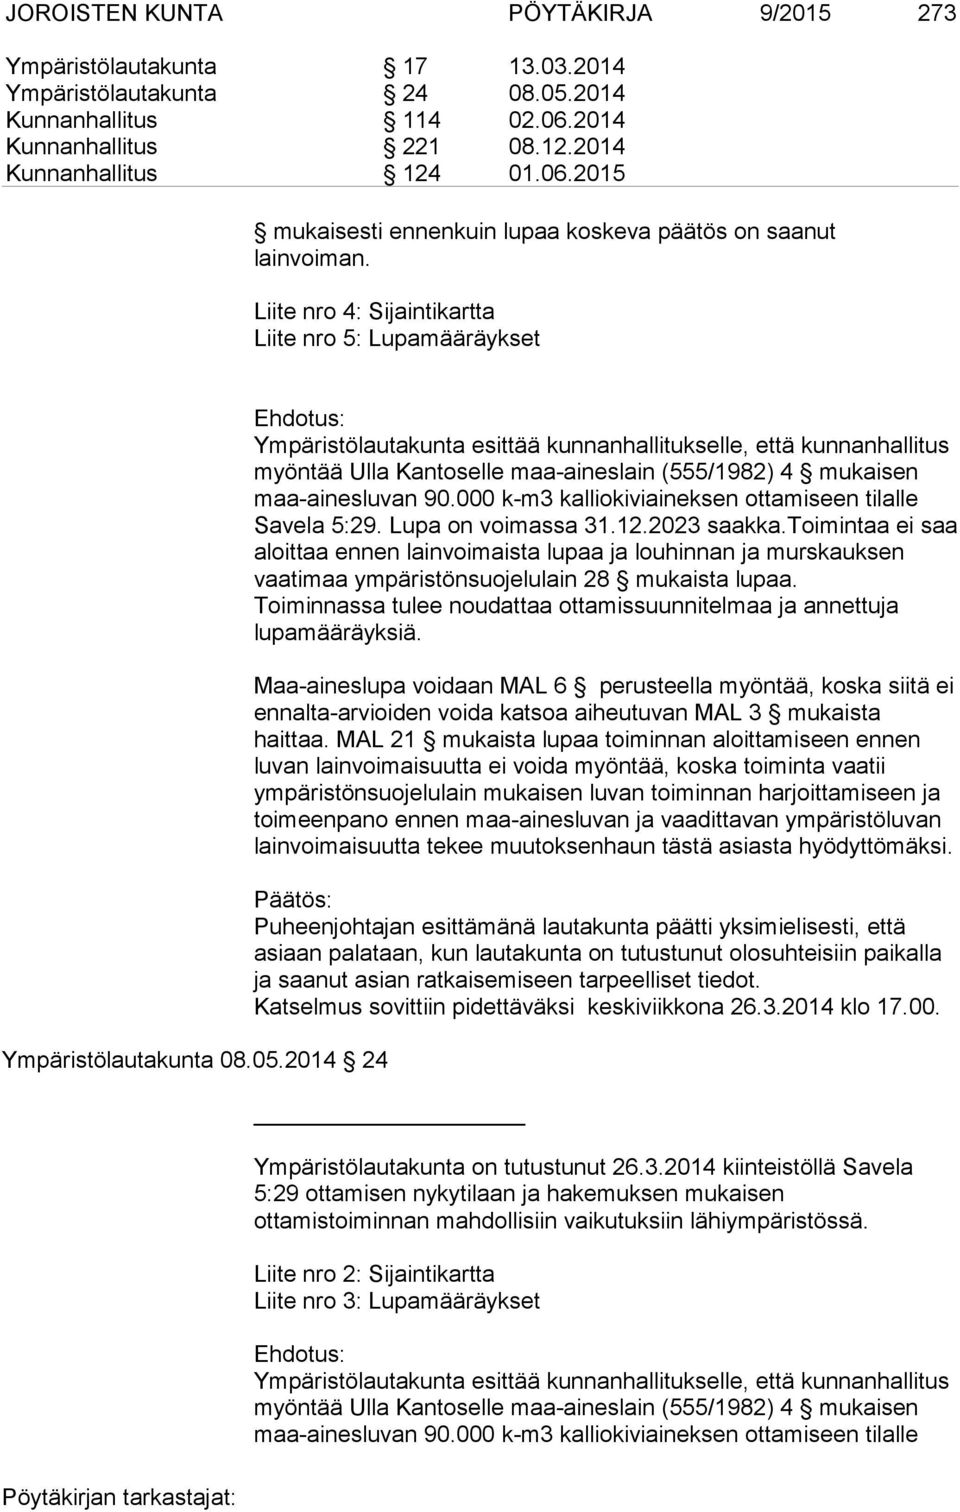 2014 24 Ehdotus: Ympäristölautakunta esittää kunnanhallitukselle, että kunnanhallitus myöntää Ulla Kantoselle maa-aineslain (555/1982) 4 mukaisen maa-ainesluvan 90.